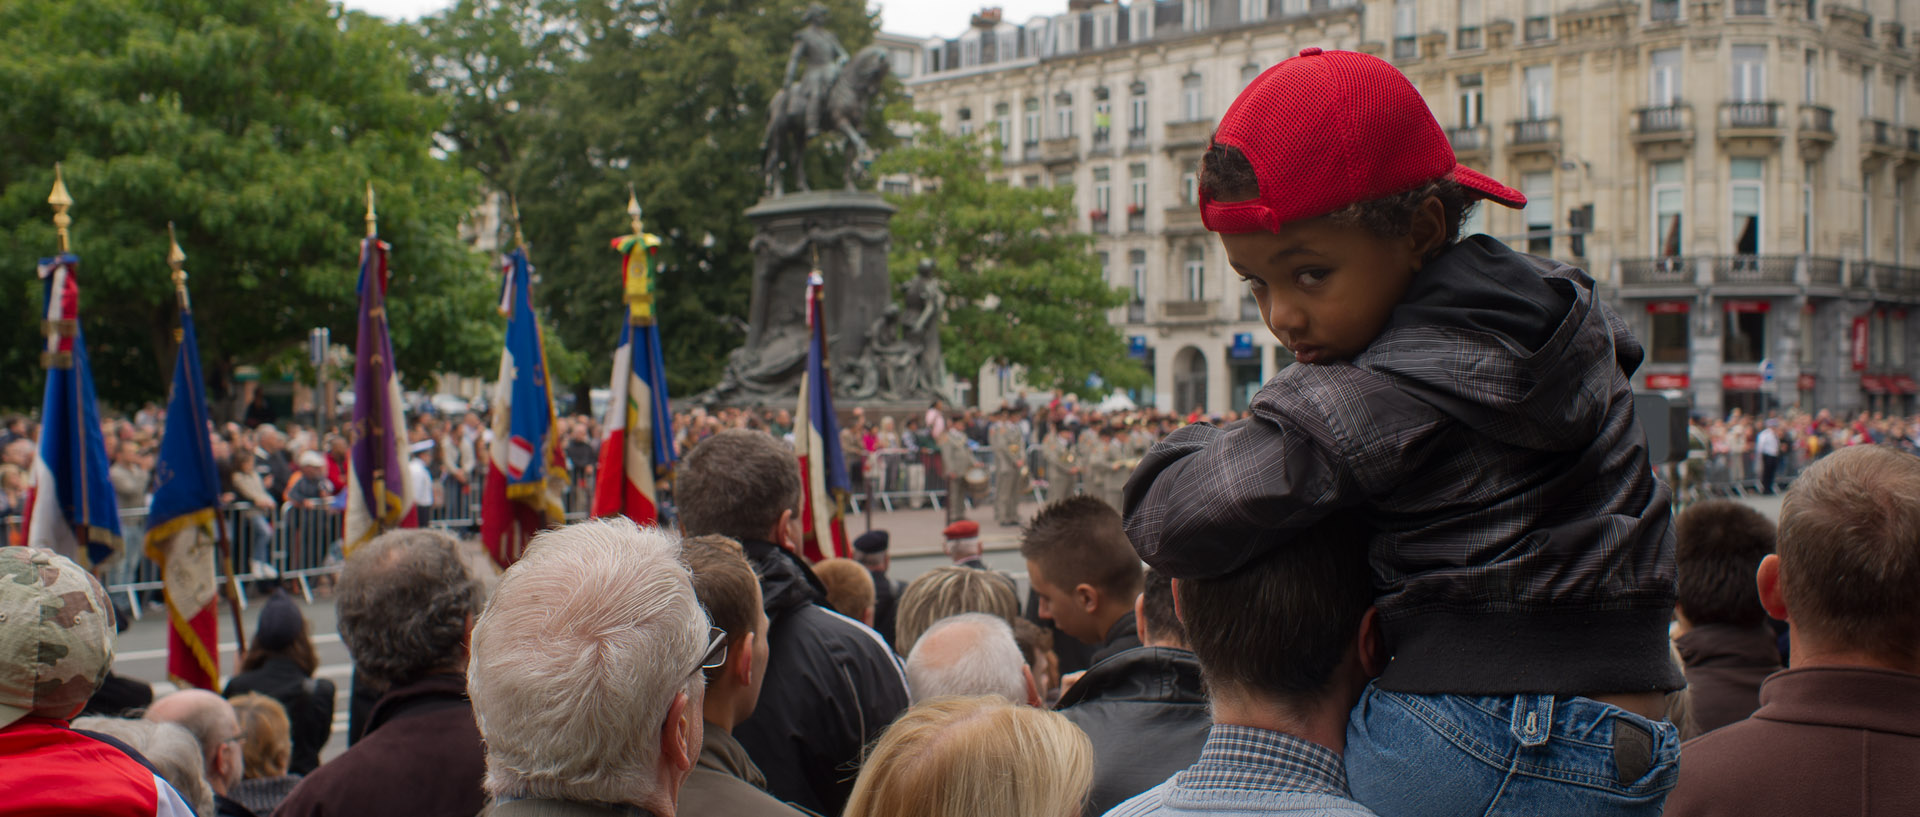 Enfant sur les épaules de son père pendant la cérémonie du 14 juillet, place de la République, à Lille.